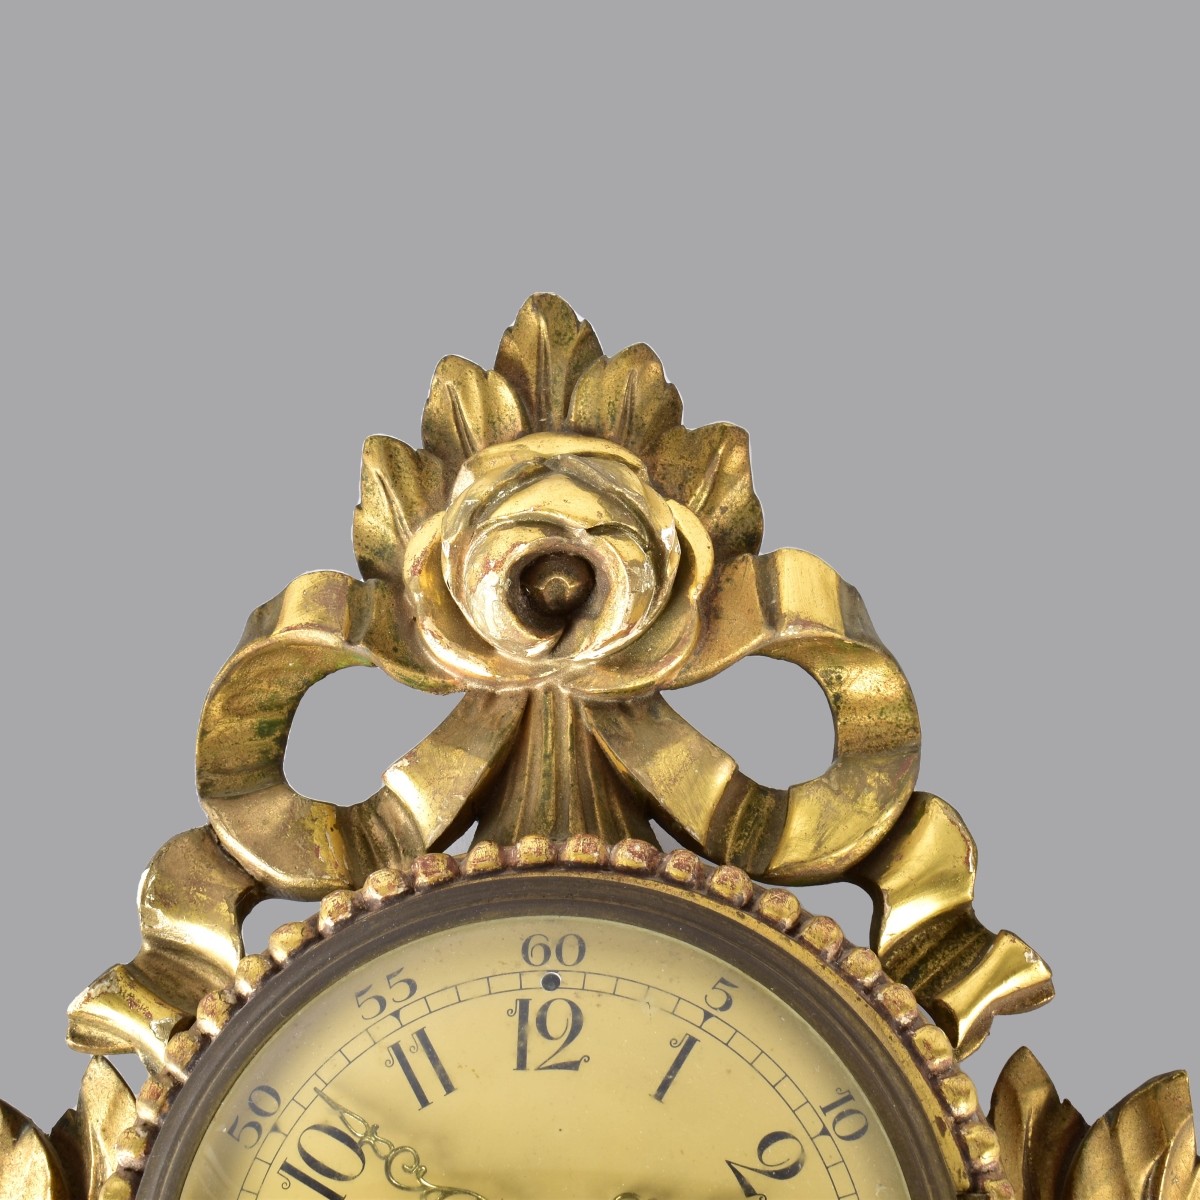 A.B. Westerstrand & Soner Cartel Clock